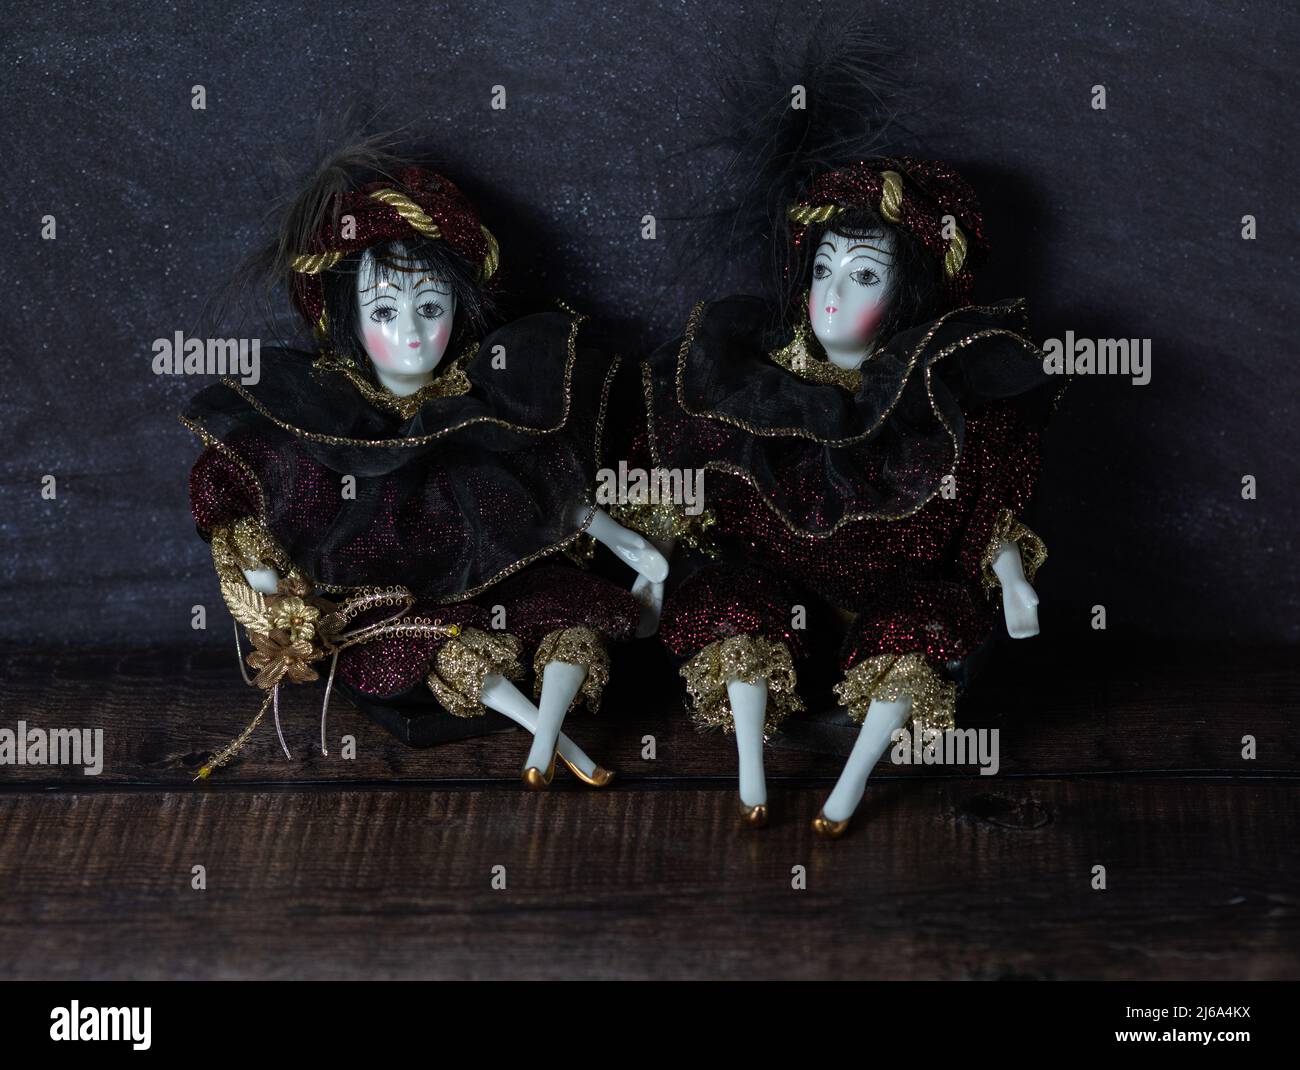 Giocattoli d'epoca in porcellana realistici con occhi grigi. Le bambole sono vestite con un abito da carnevale, decorato con oro. Vecchio stile italiano. Foto Stock